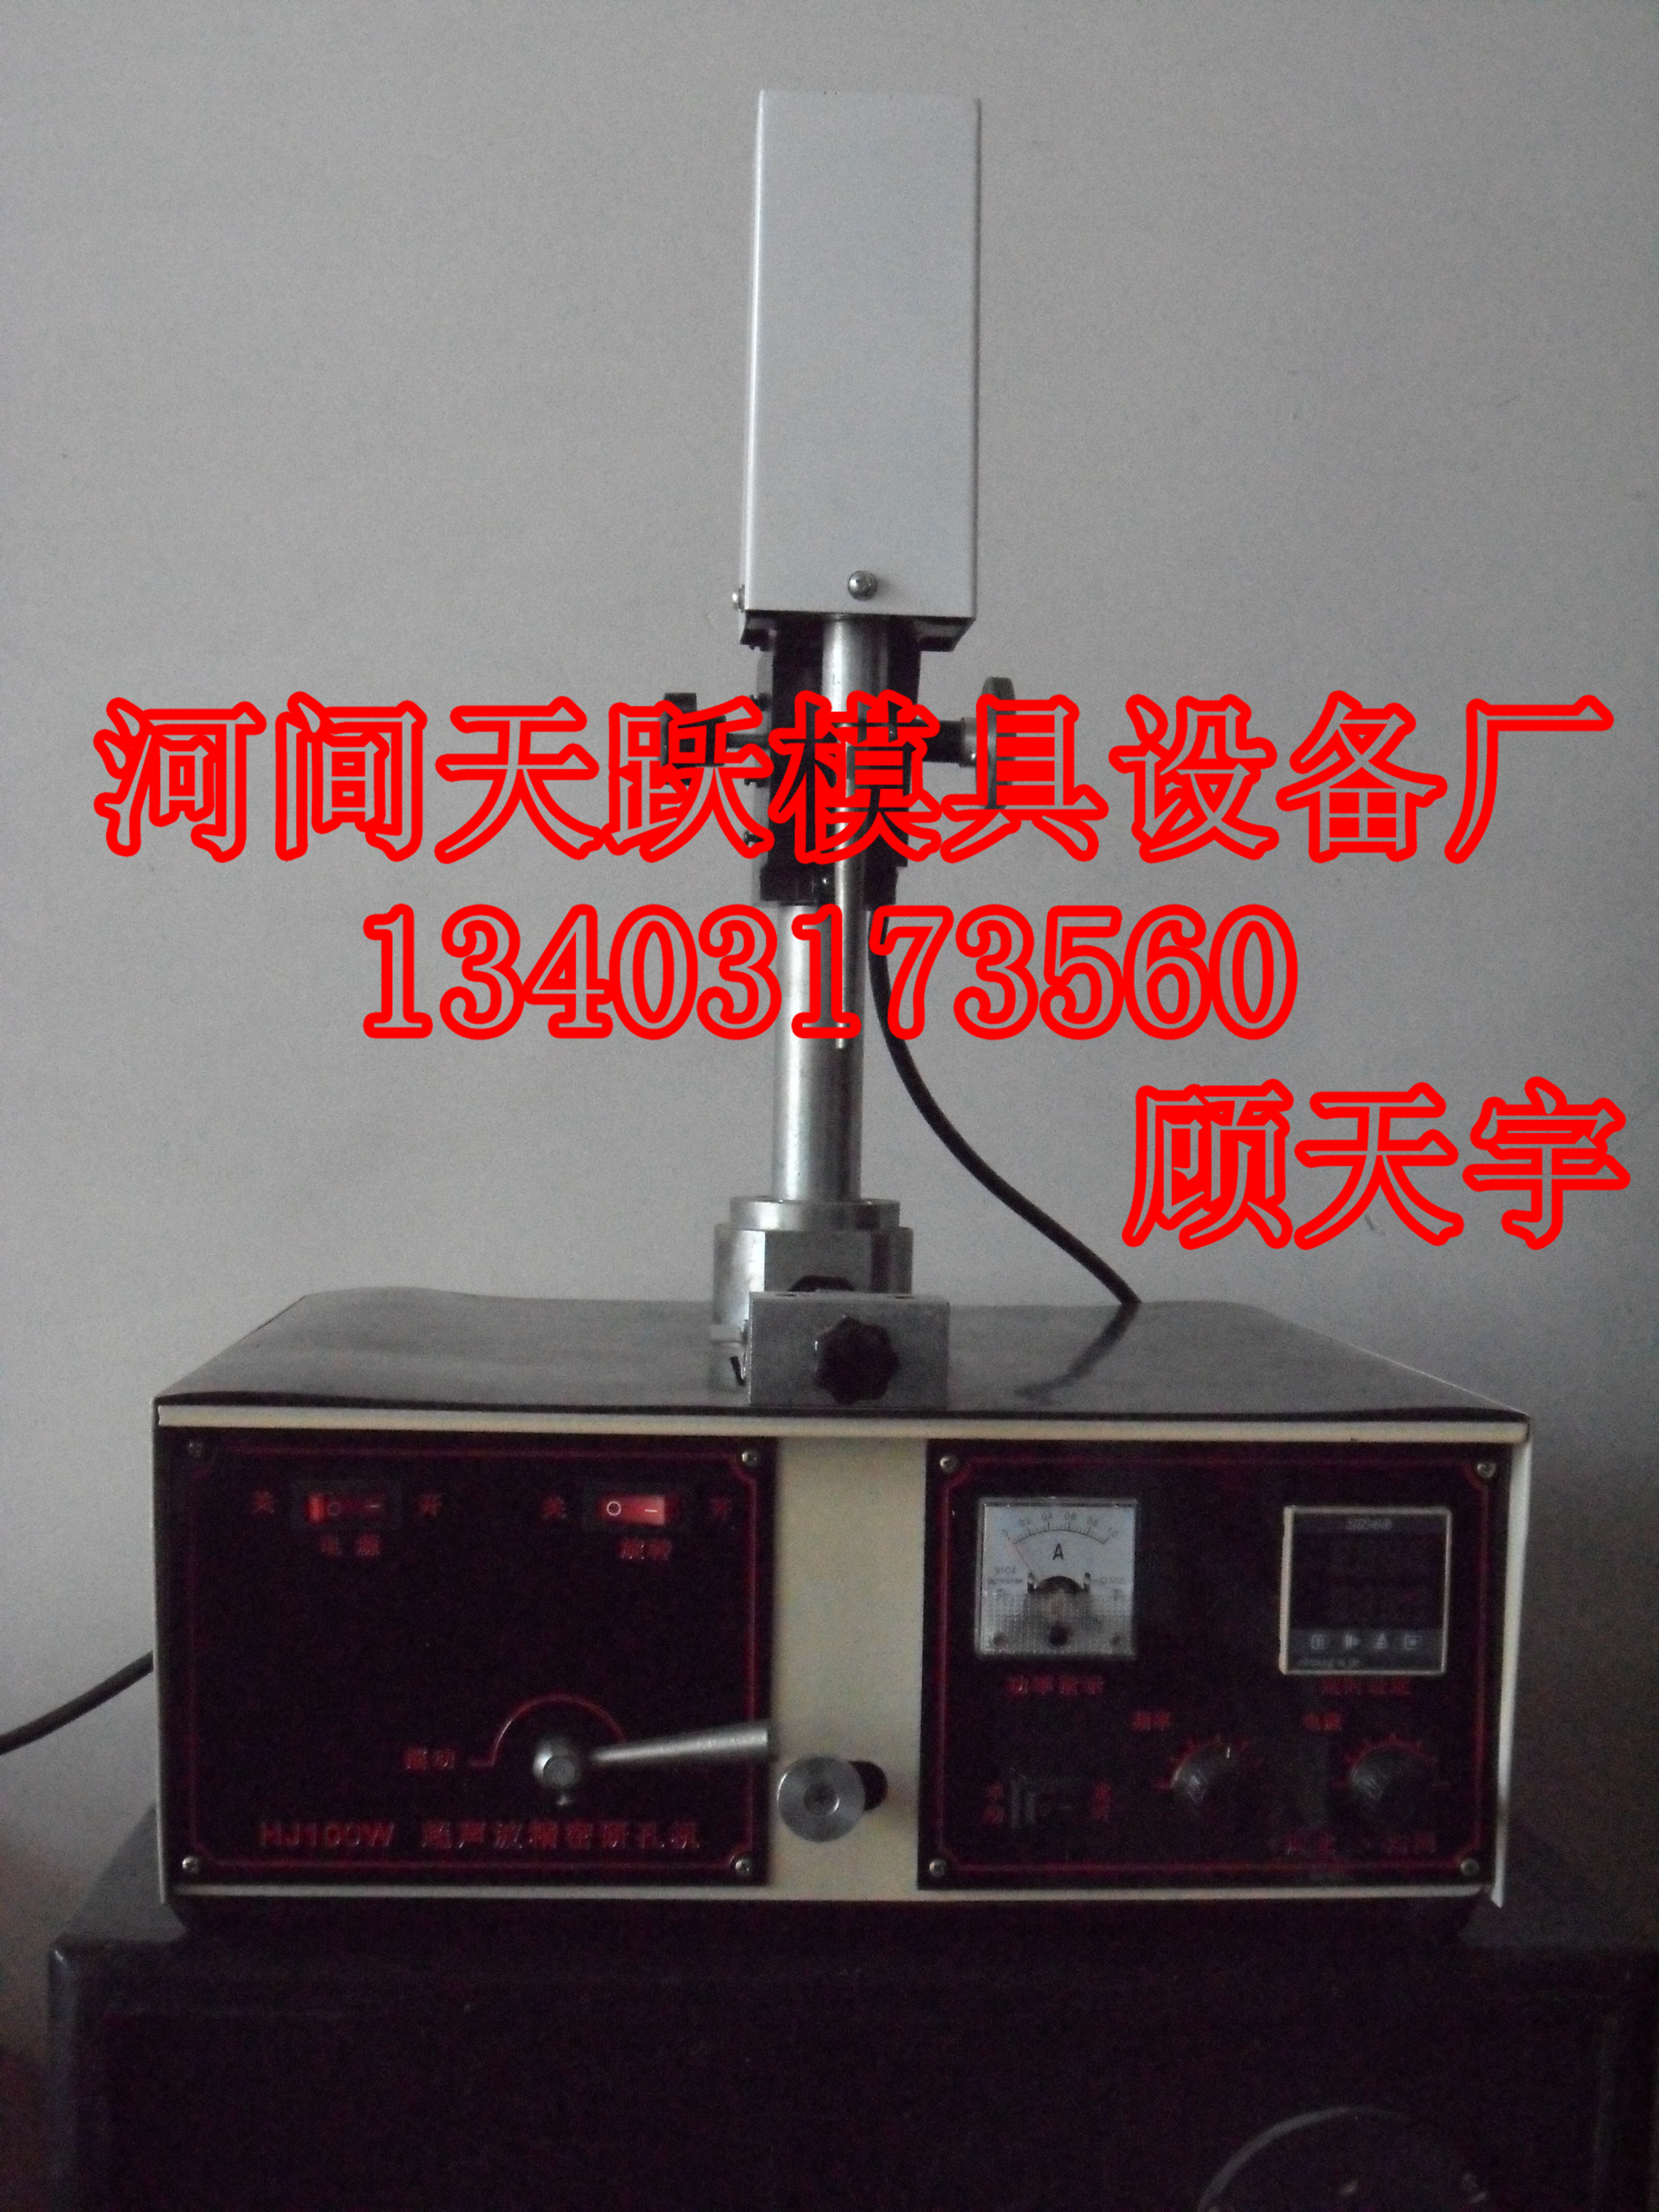 天跃TY-100型拉丝模具超声波研磨机 TY-100型超声波研磨机 TY-100型拉丝模具研磨机图片